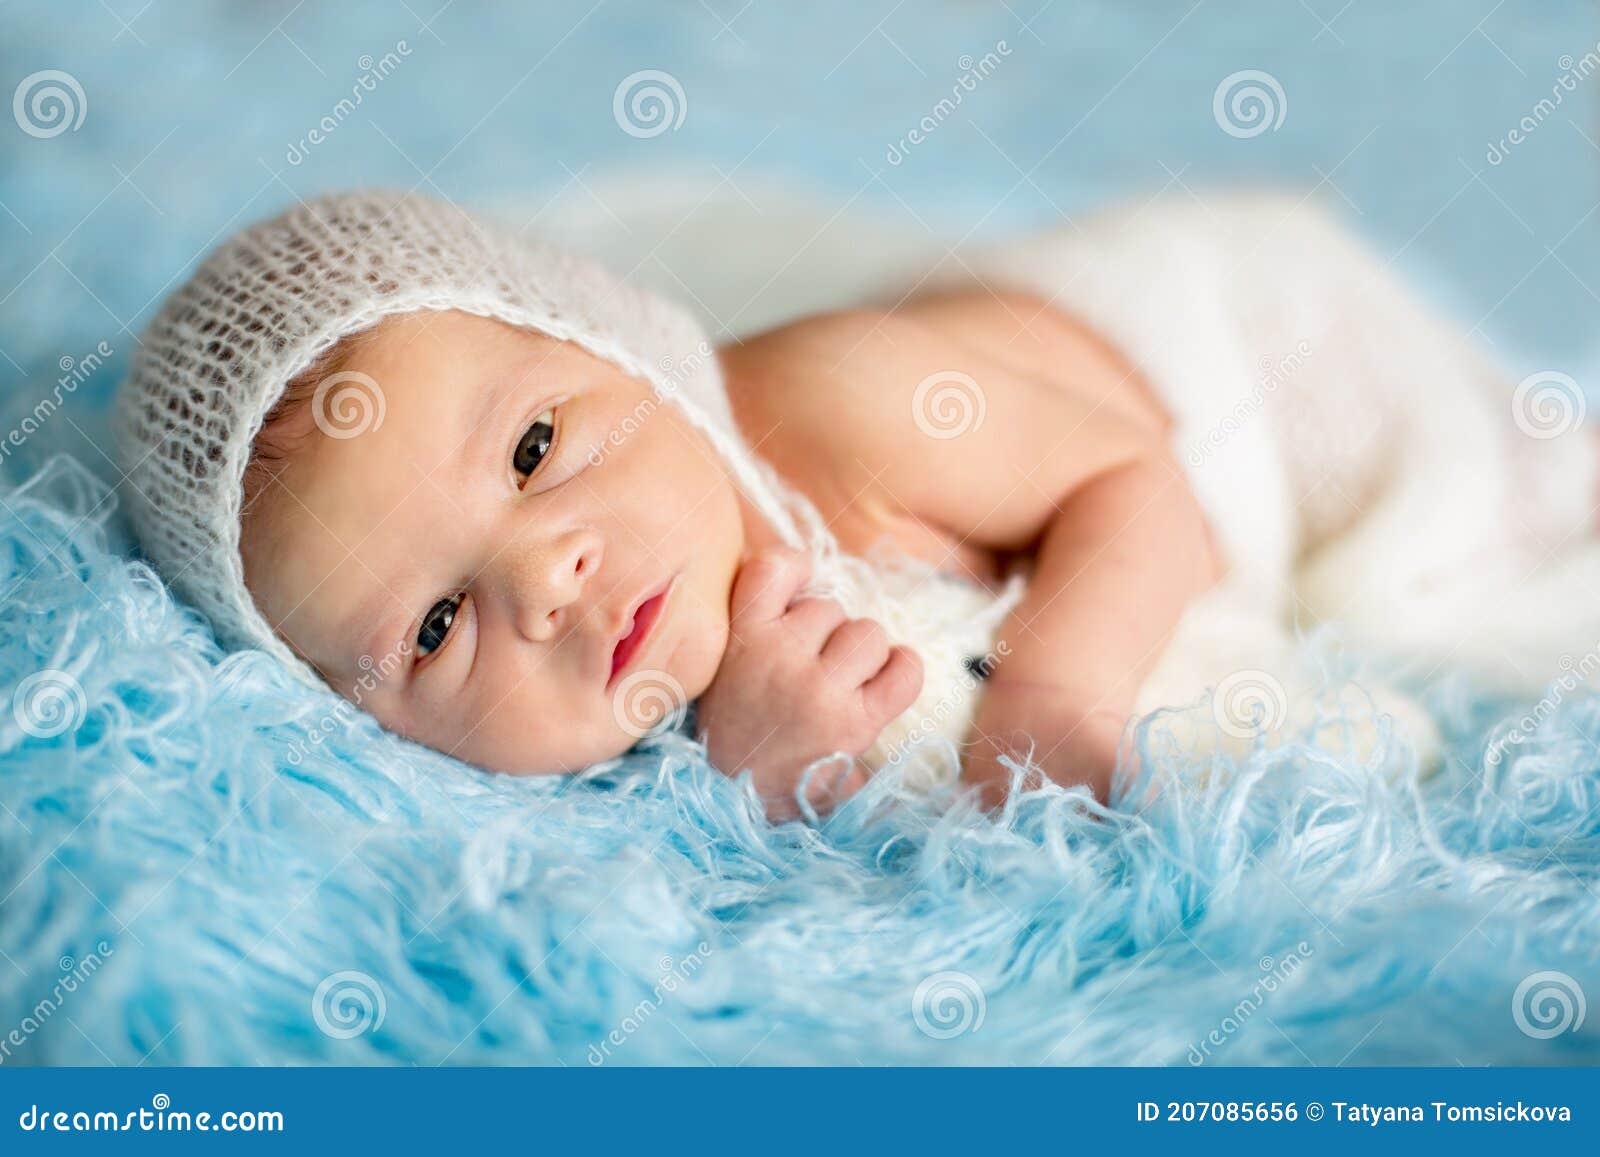 Un lindo bebé recién nacido con ropa ligera está jugando con juguetes  educativos tirados en el suelo sobre una manta de lino gris. vista  superior. productos para niños. feliz infancia y maternidad.